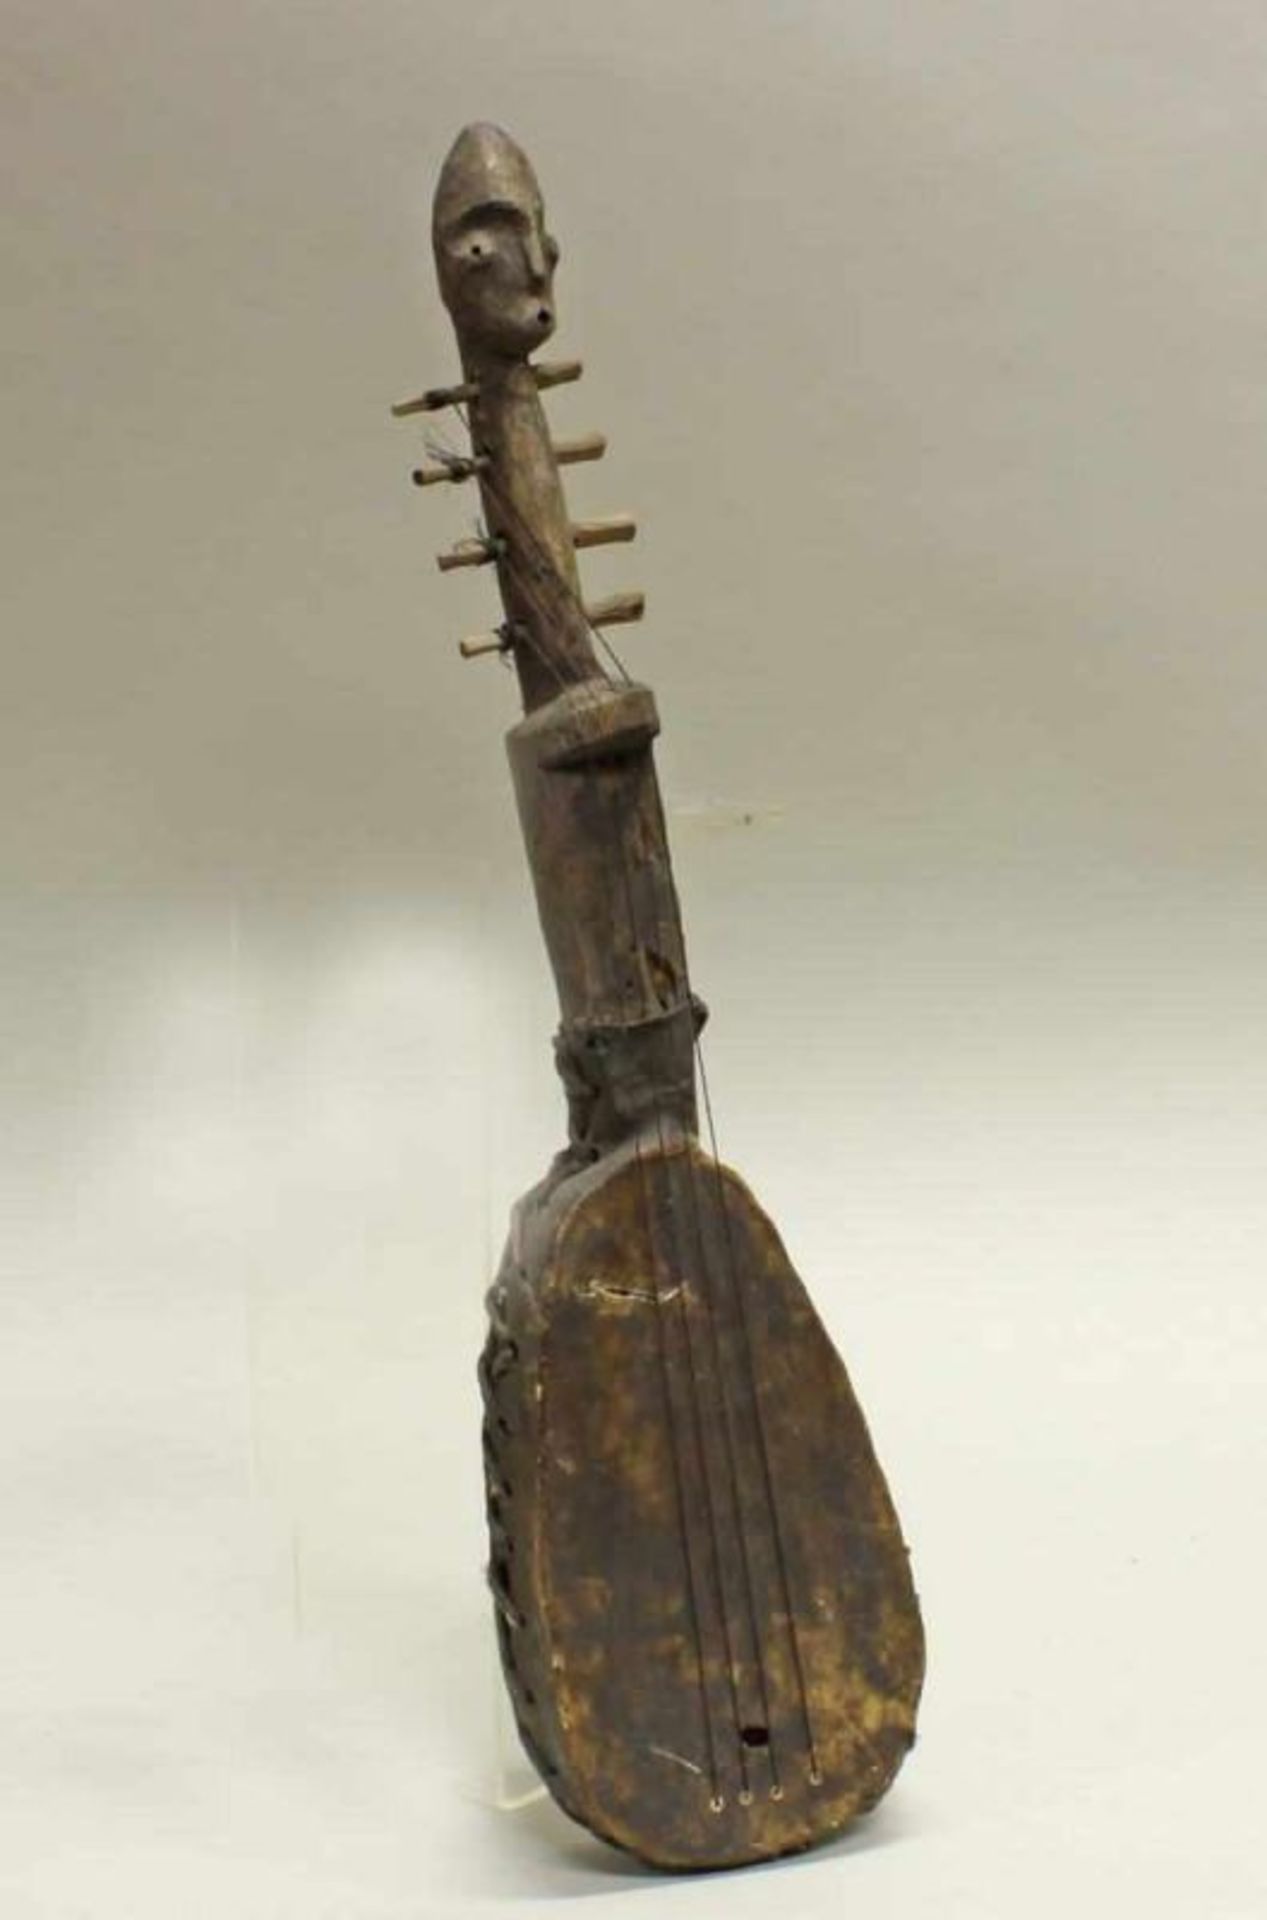 Zupfinstrument, Mangbetu, Kongo, Afrika, lederbespannter Hohlkörper, vollplastischer Figurenhals, 56